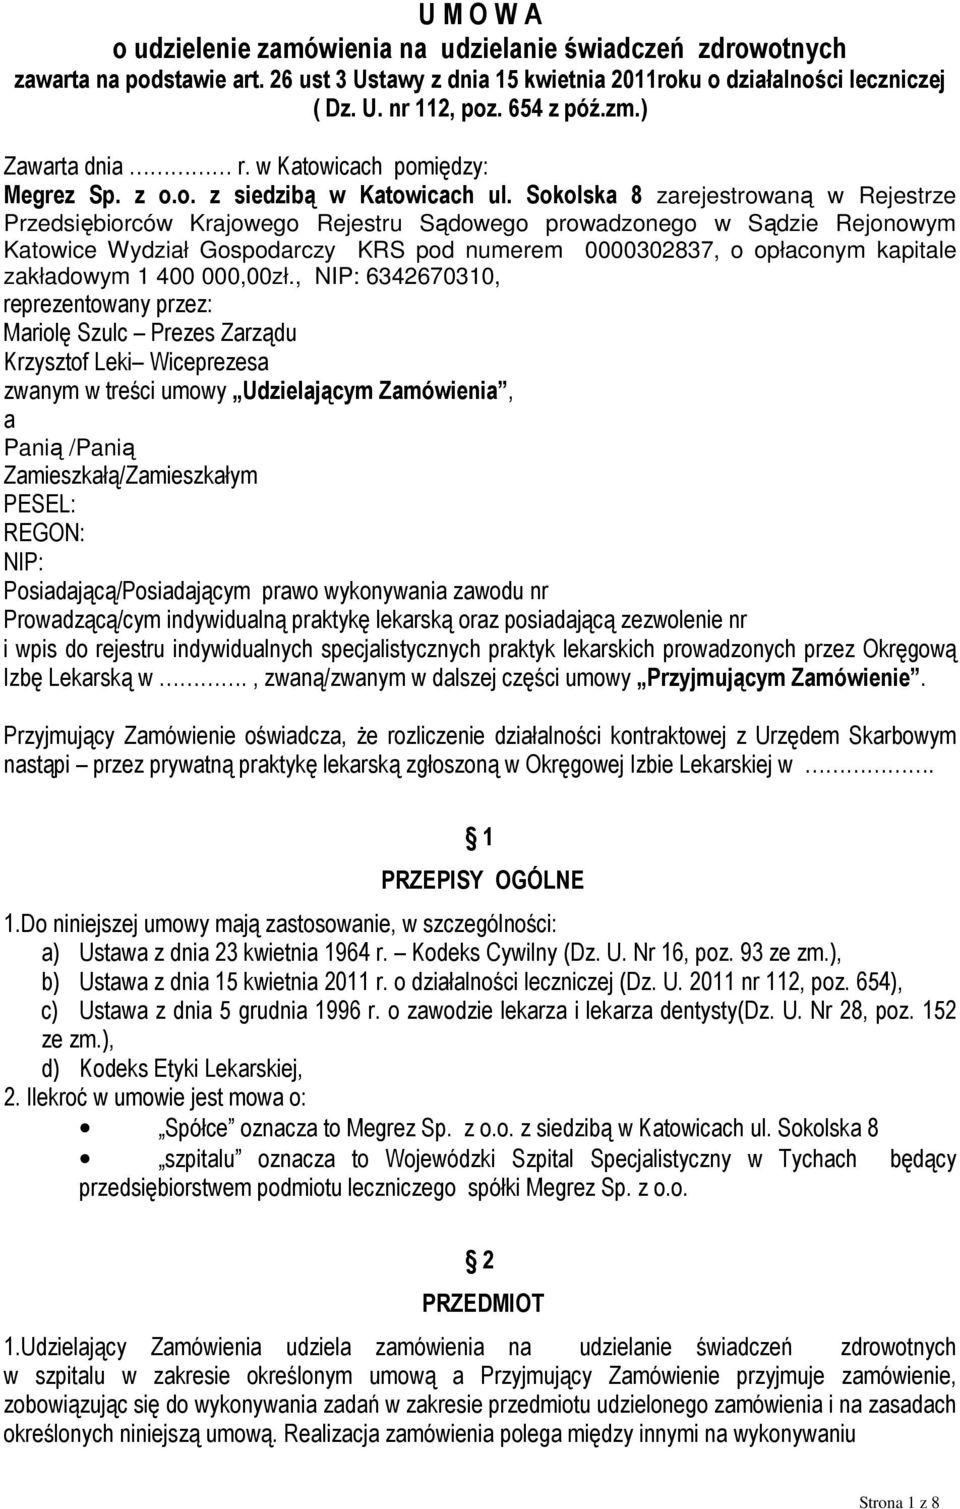 Sokolska 8 zarejestrowaną w Rejestrze Przedsiębiorców Krajowego Rejestru Sądowego prowadzonego w Sądzie Rejonowym Katowice Wydział Gospodarczy KRS pod numerem 0000302837, o opłaconym kapitale